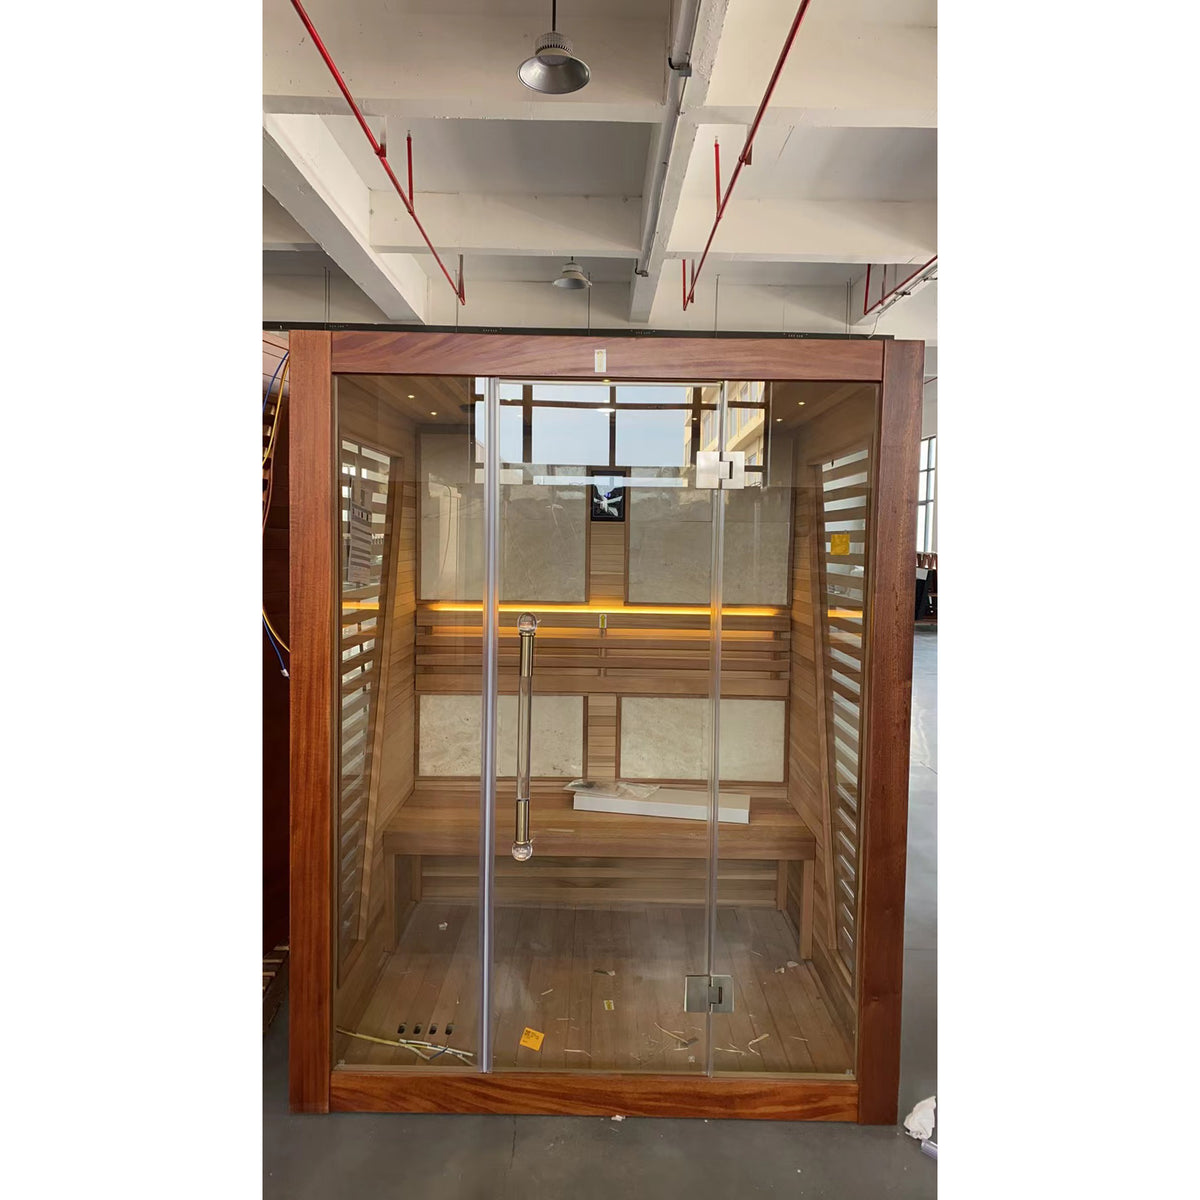 SAUNASNET® Luxury Traditional Indoor Steam Sauna Room Glass 02